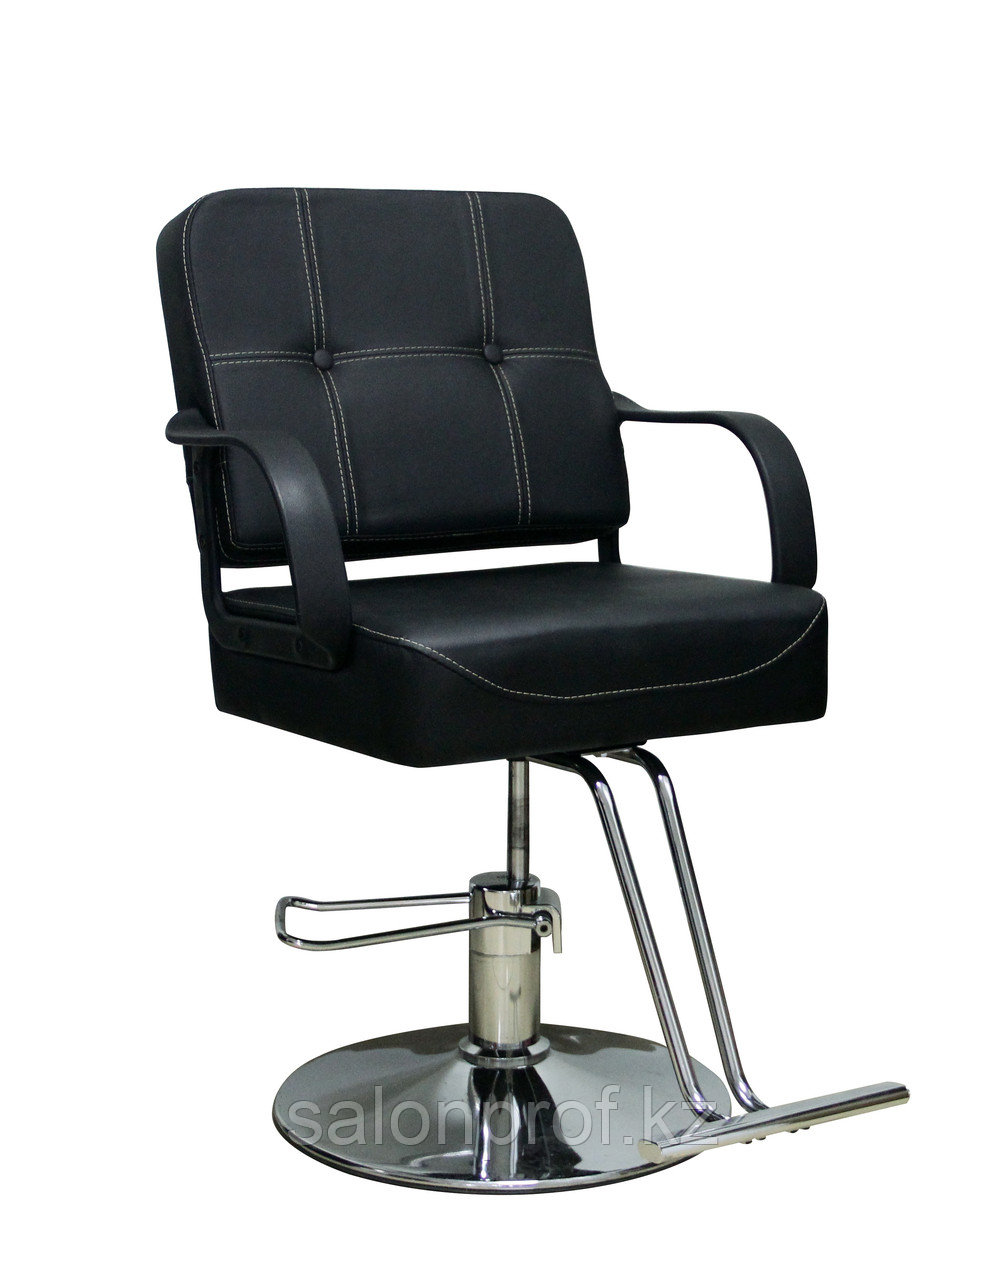 AS-8892 Кресло парикмахерское (черное, гладкое)